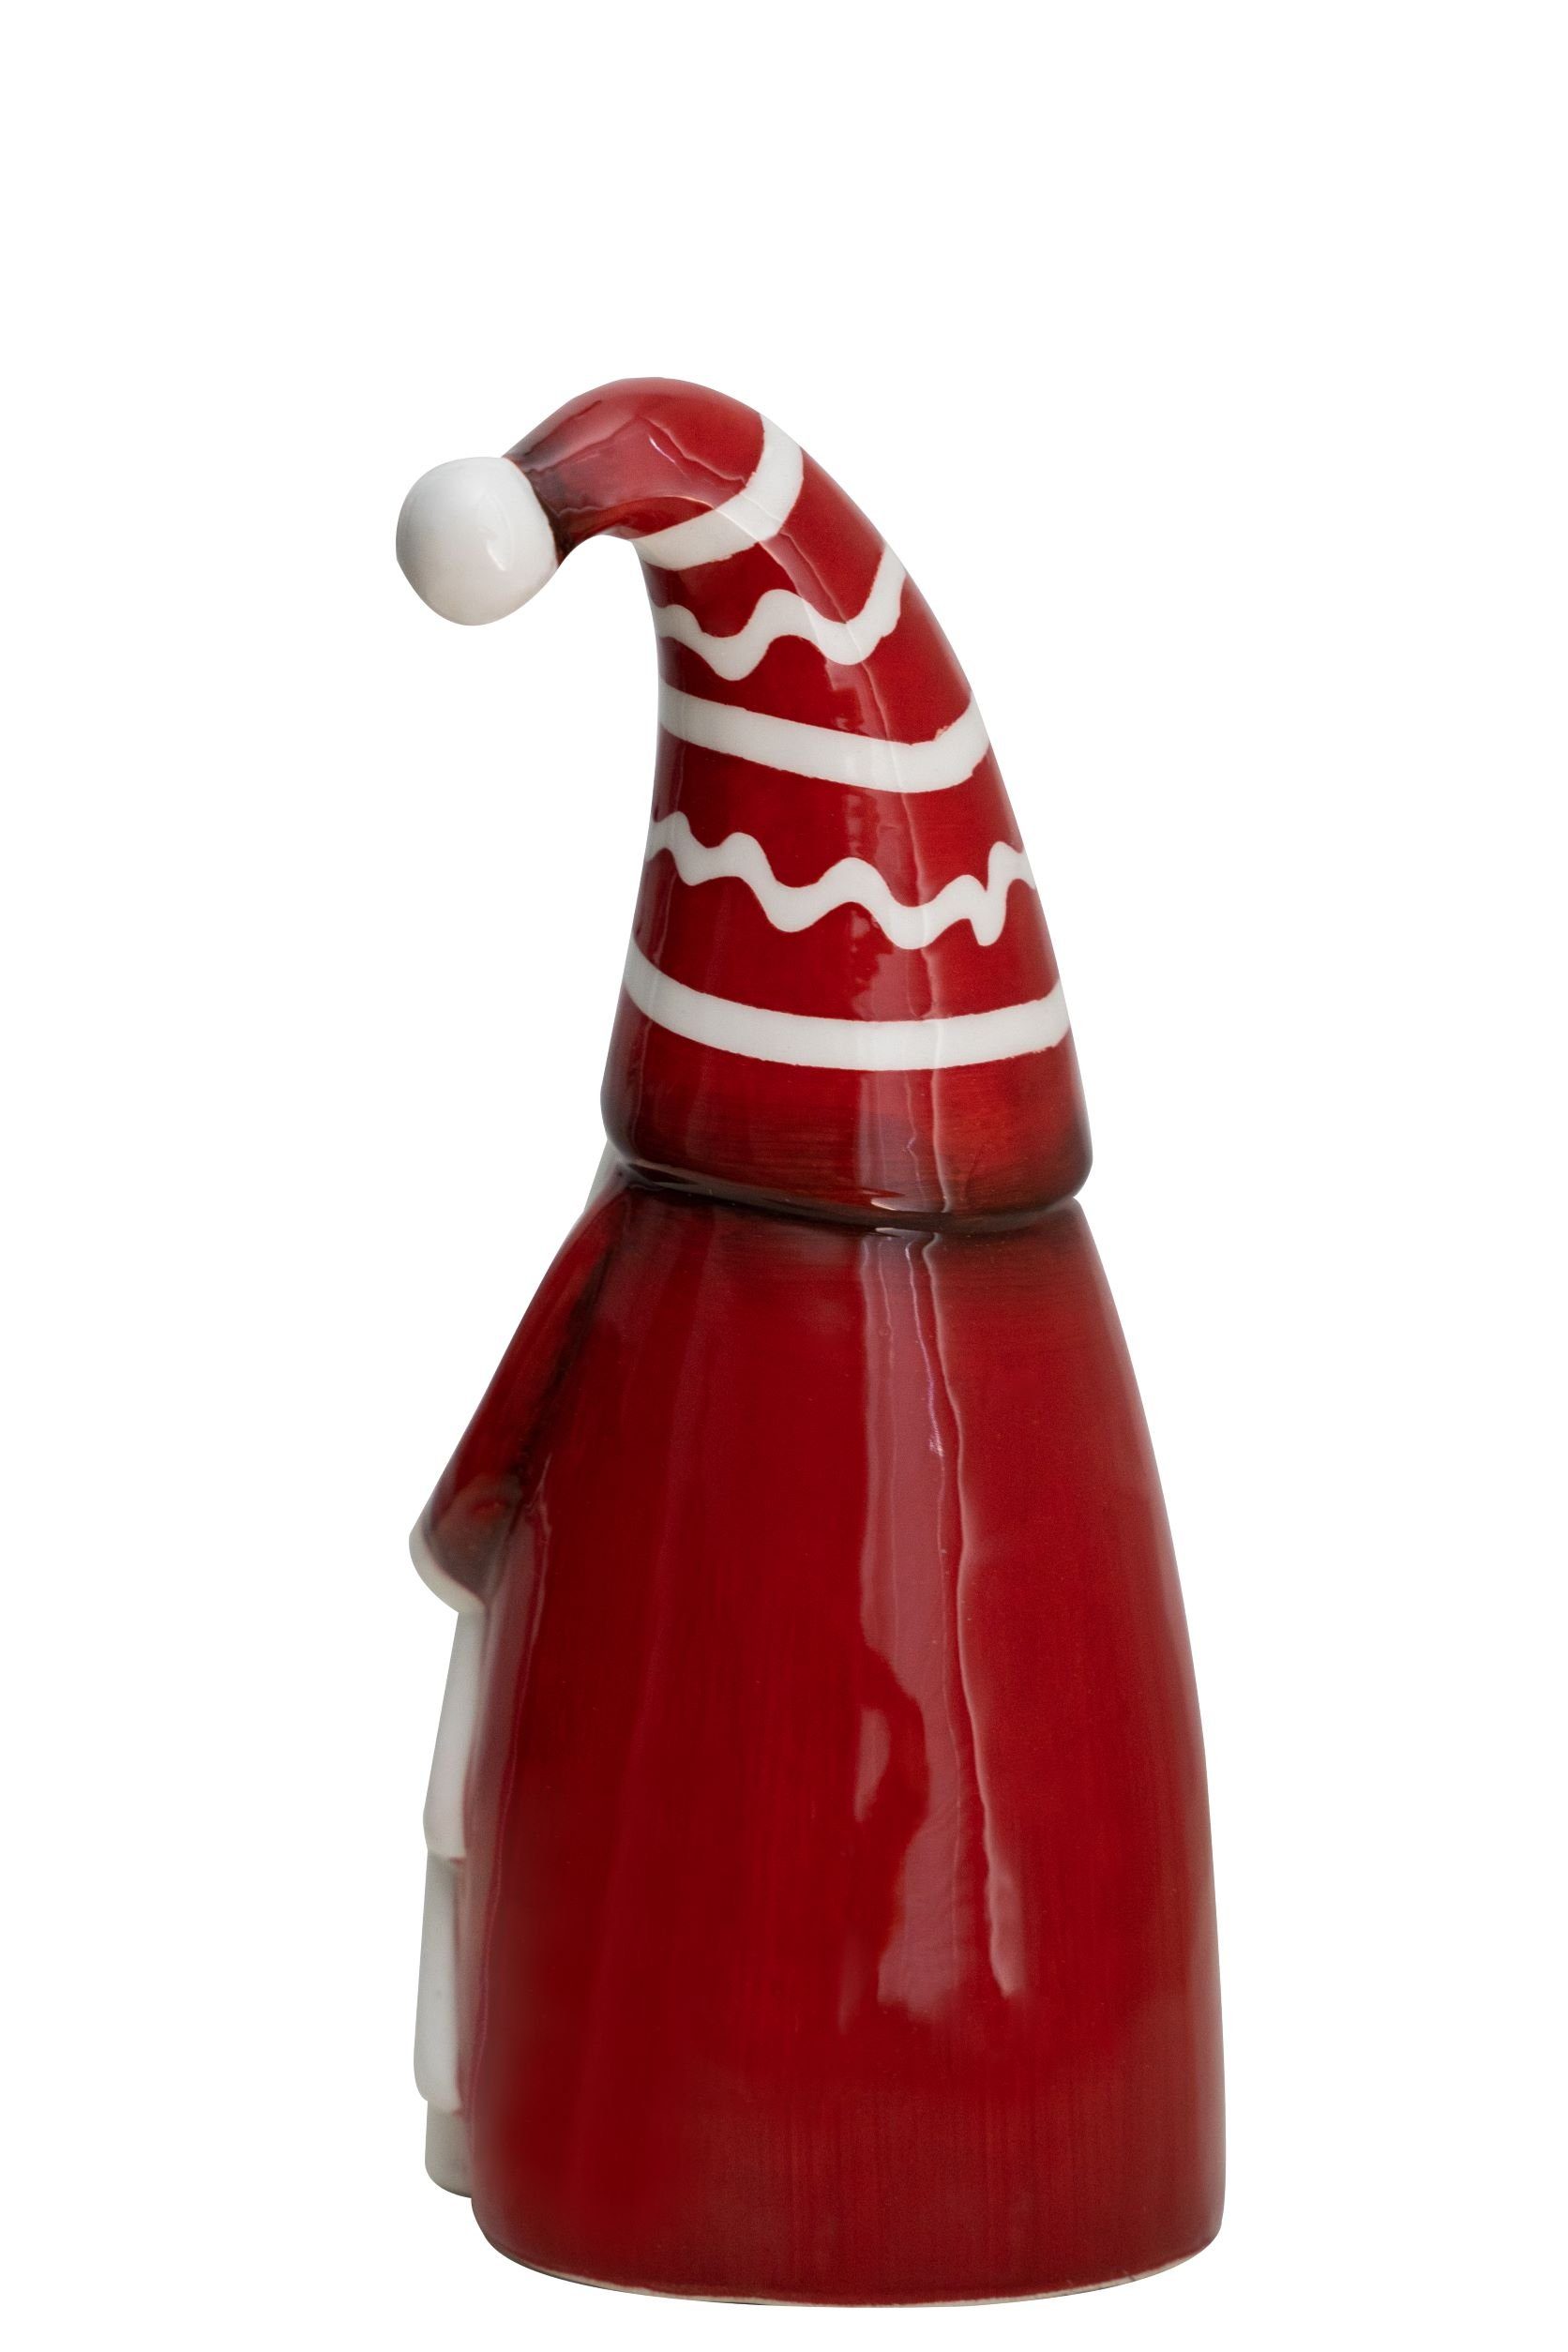 Heitmann DECO Weihnachtsfigur Nikolaus rot/weiß, Keramik, 2x mit aus Tannenbaum